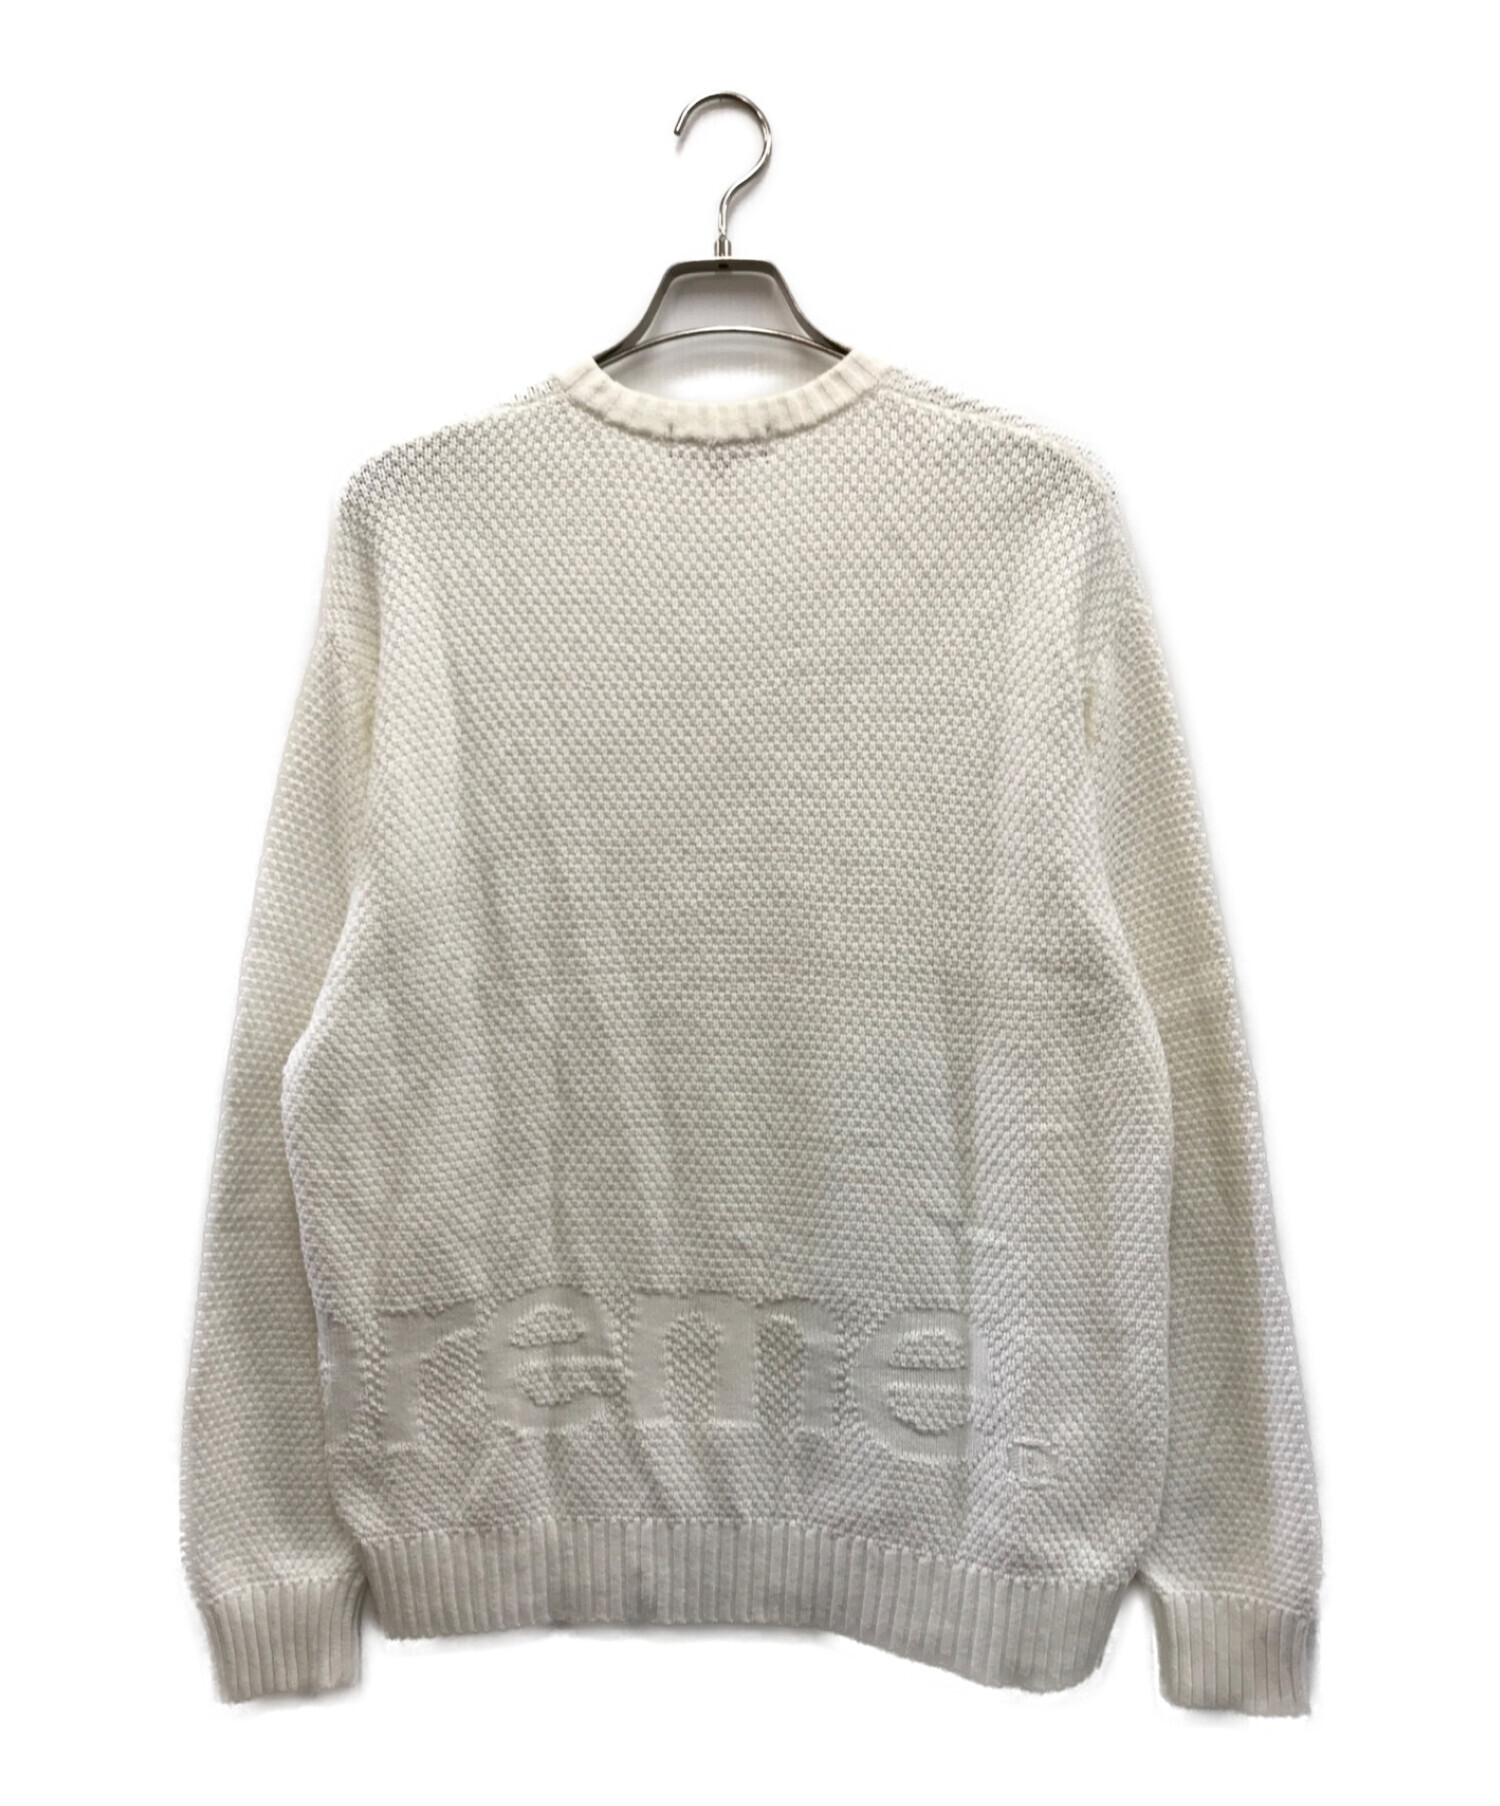 SUPREME (シュプリーム) 20AW Textured Small Box Sweater ホワイト サイズ:L